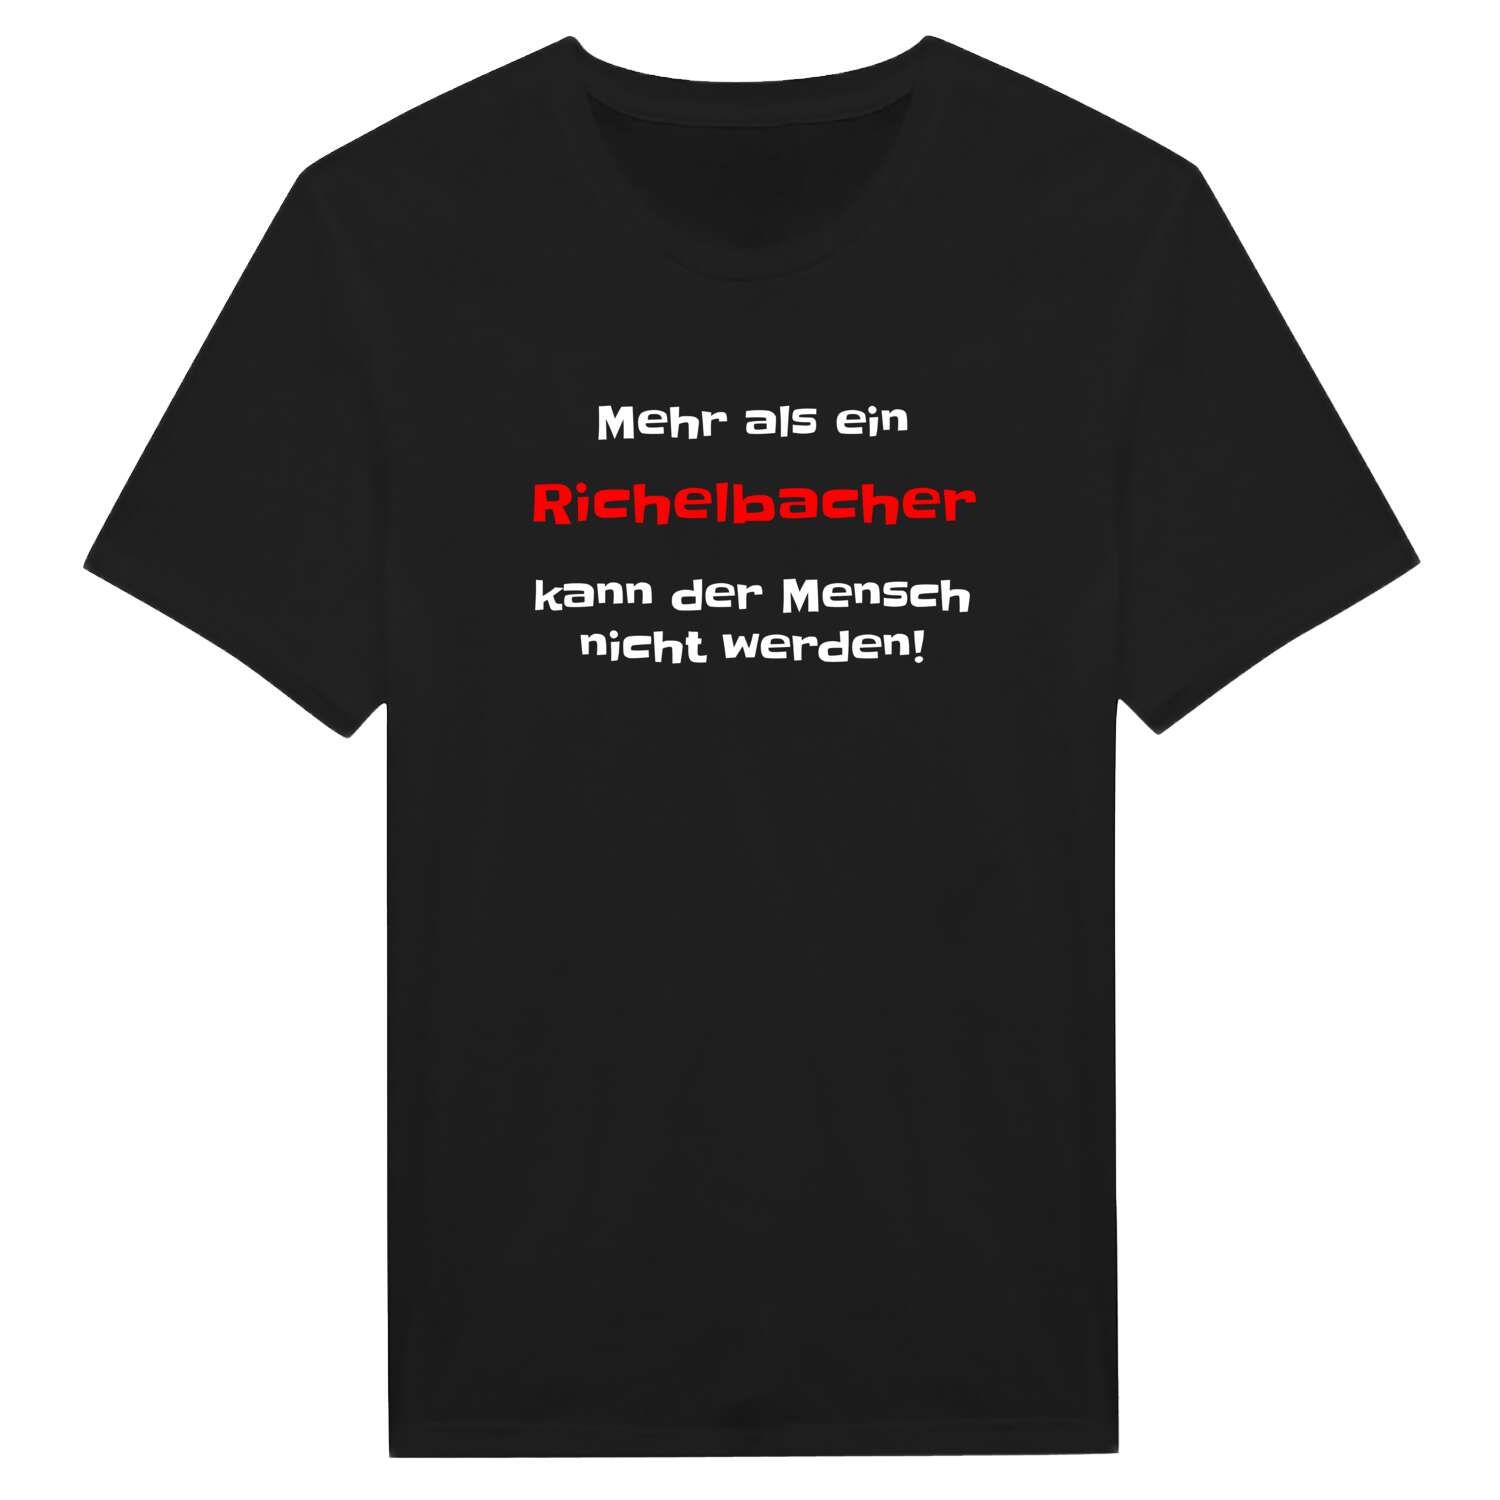 Richelbach T-Shirt »Mehr als ein«